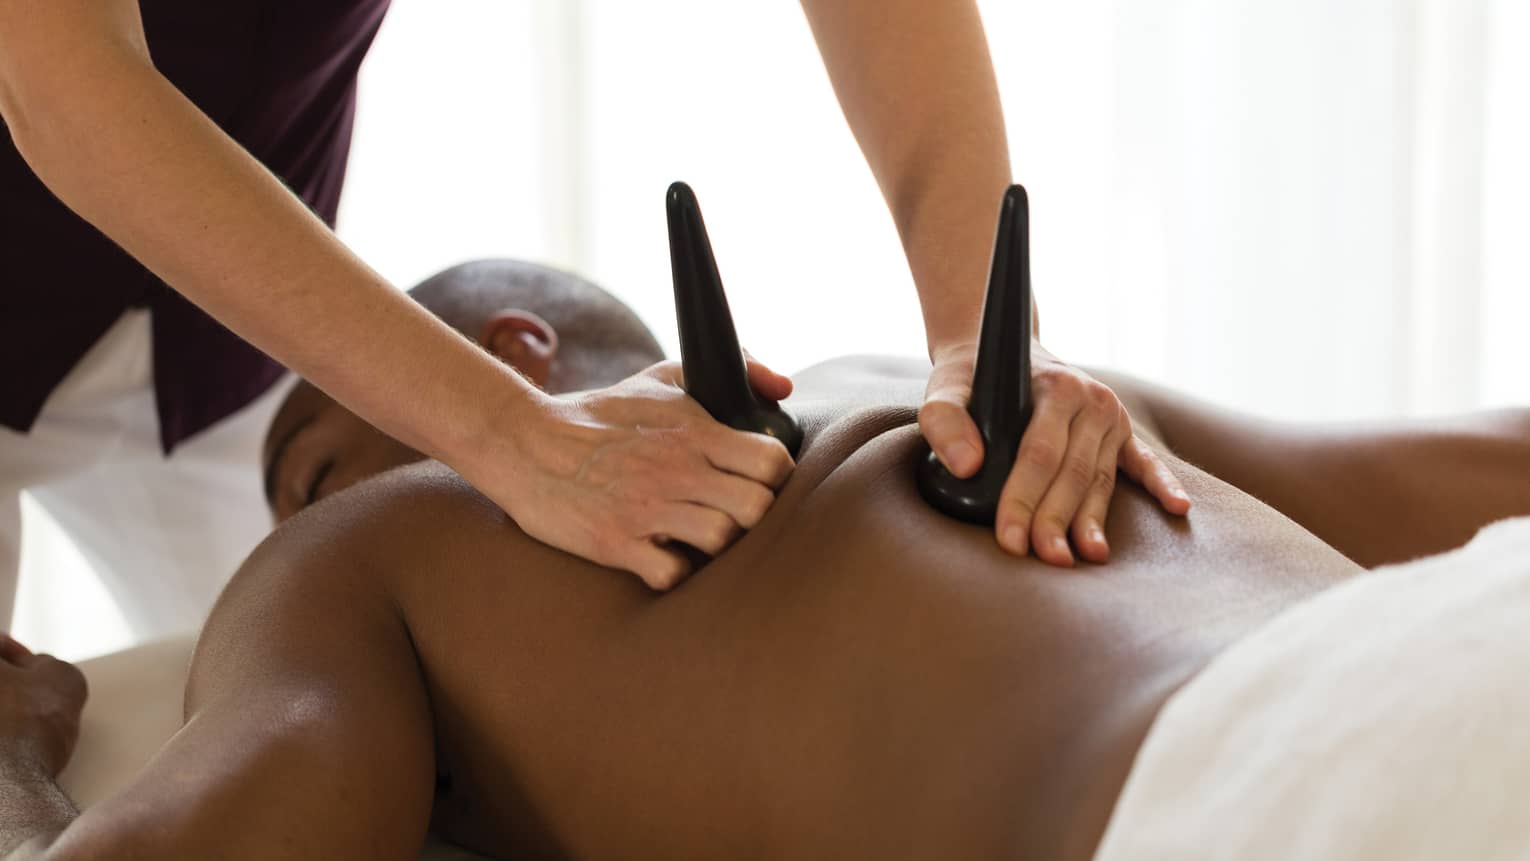 Masseuse pressed sculpted basalt stones on man's bare shoulders during massage